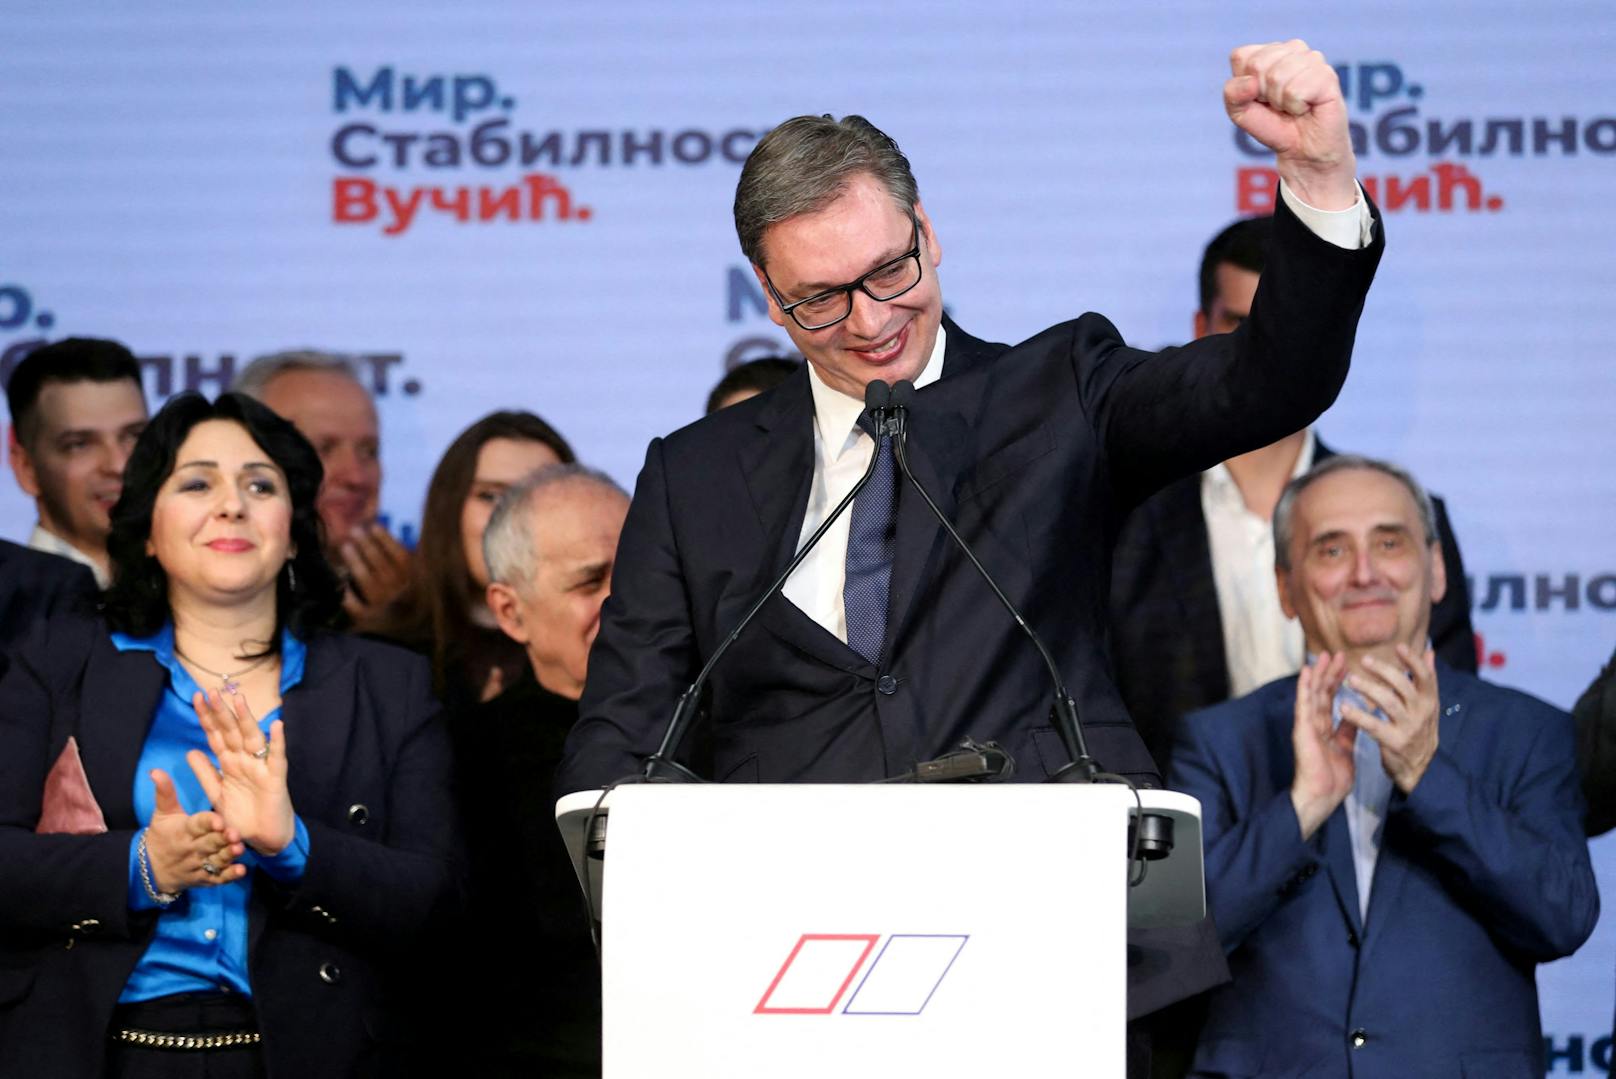 Aleksandar Vučić erklärt sich zum Wahlsieger in Serbien